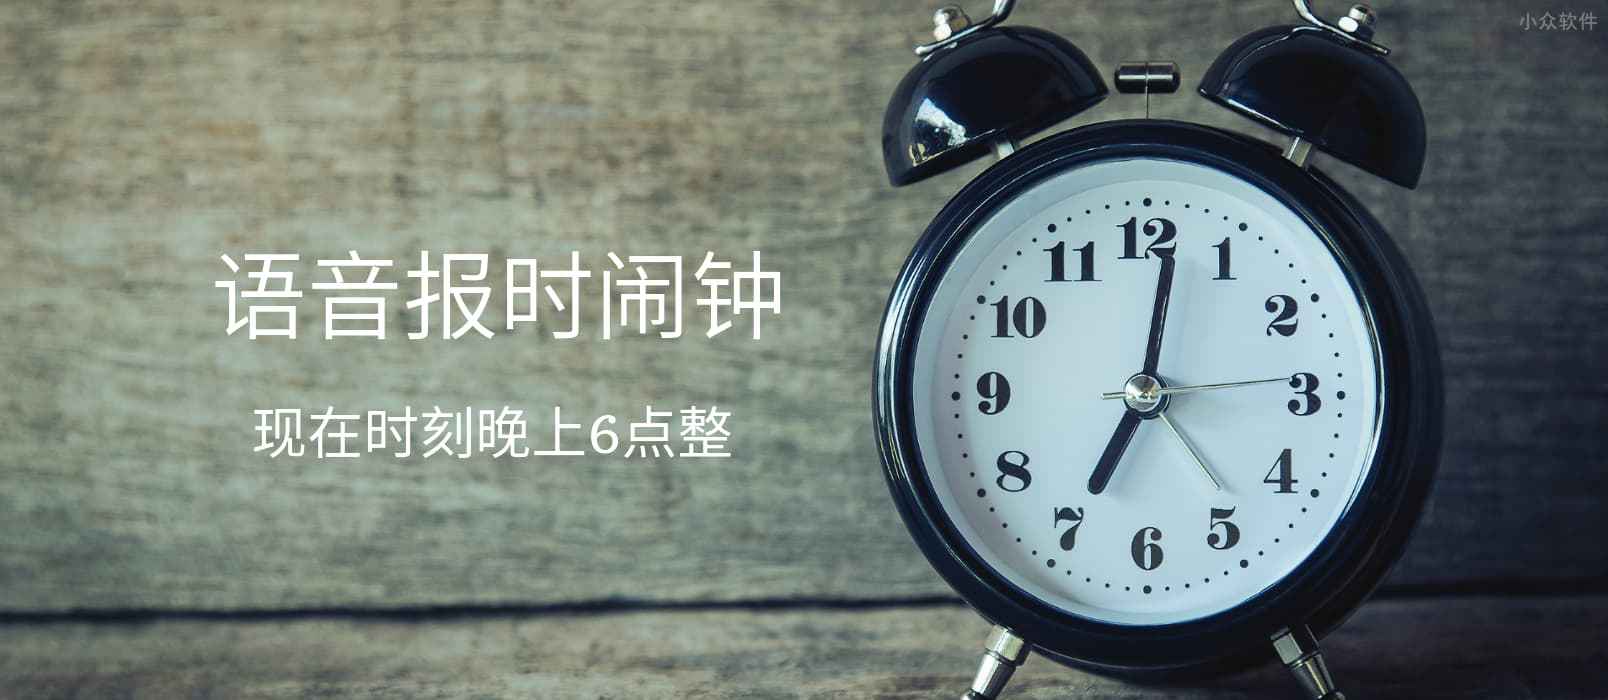 语音报时闹钟 - 支持粤语和四川话的循环提醒与整点报时应用[iPhone/Android] 1